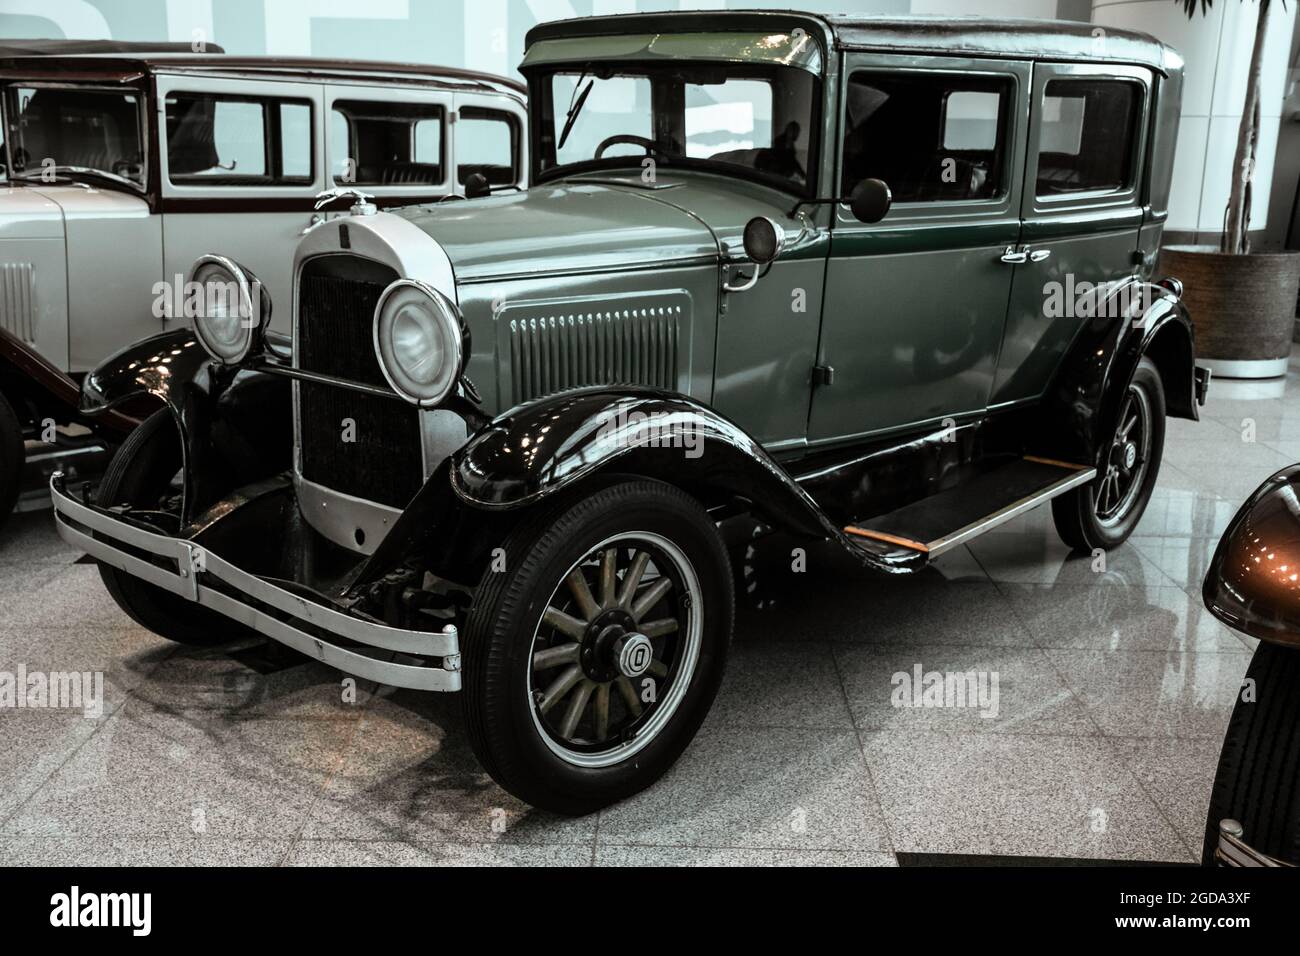 4 giugno 2019, Mosca, Russia: Vista laterale della vettura americana Willys Overland 96A 1929. Classiche auto retrò degli anni '20. Foto Stock